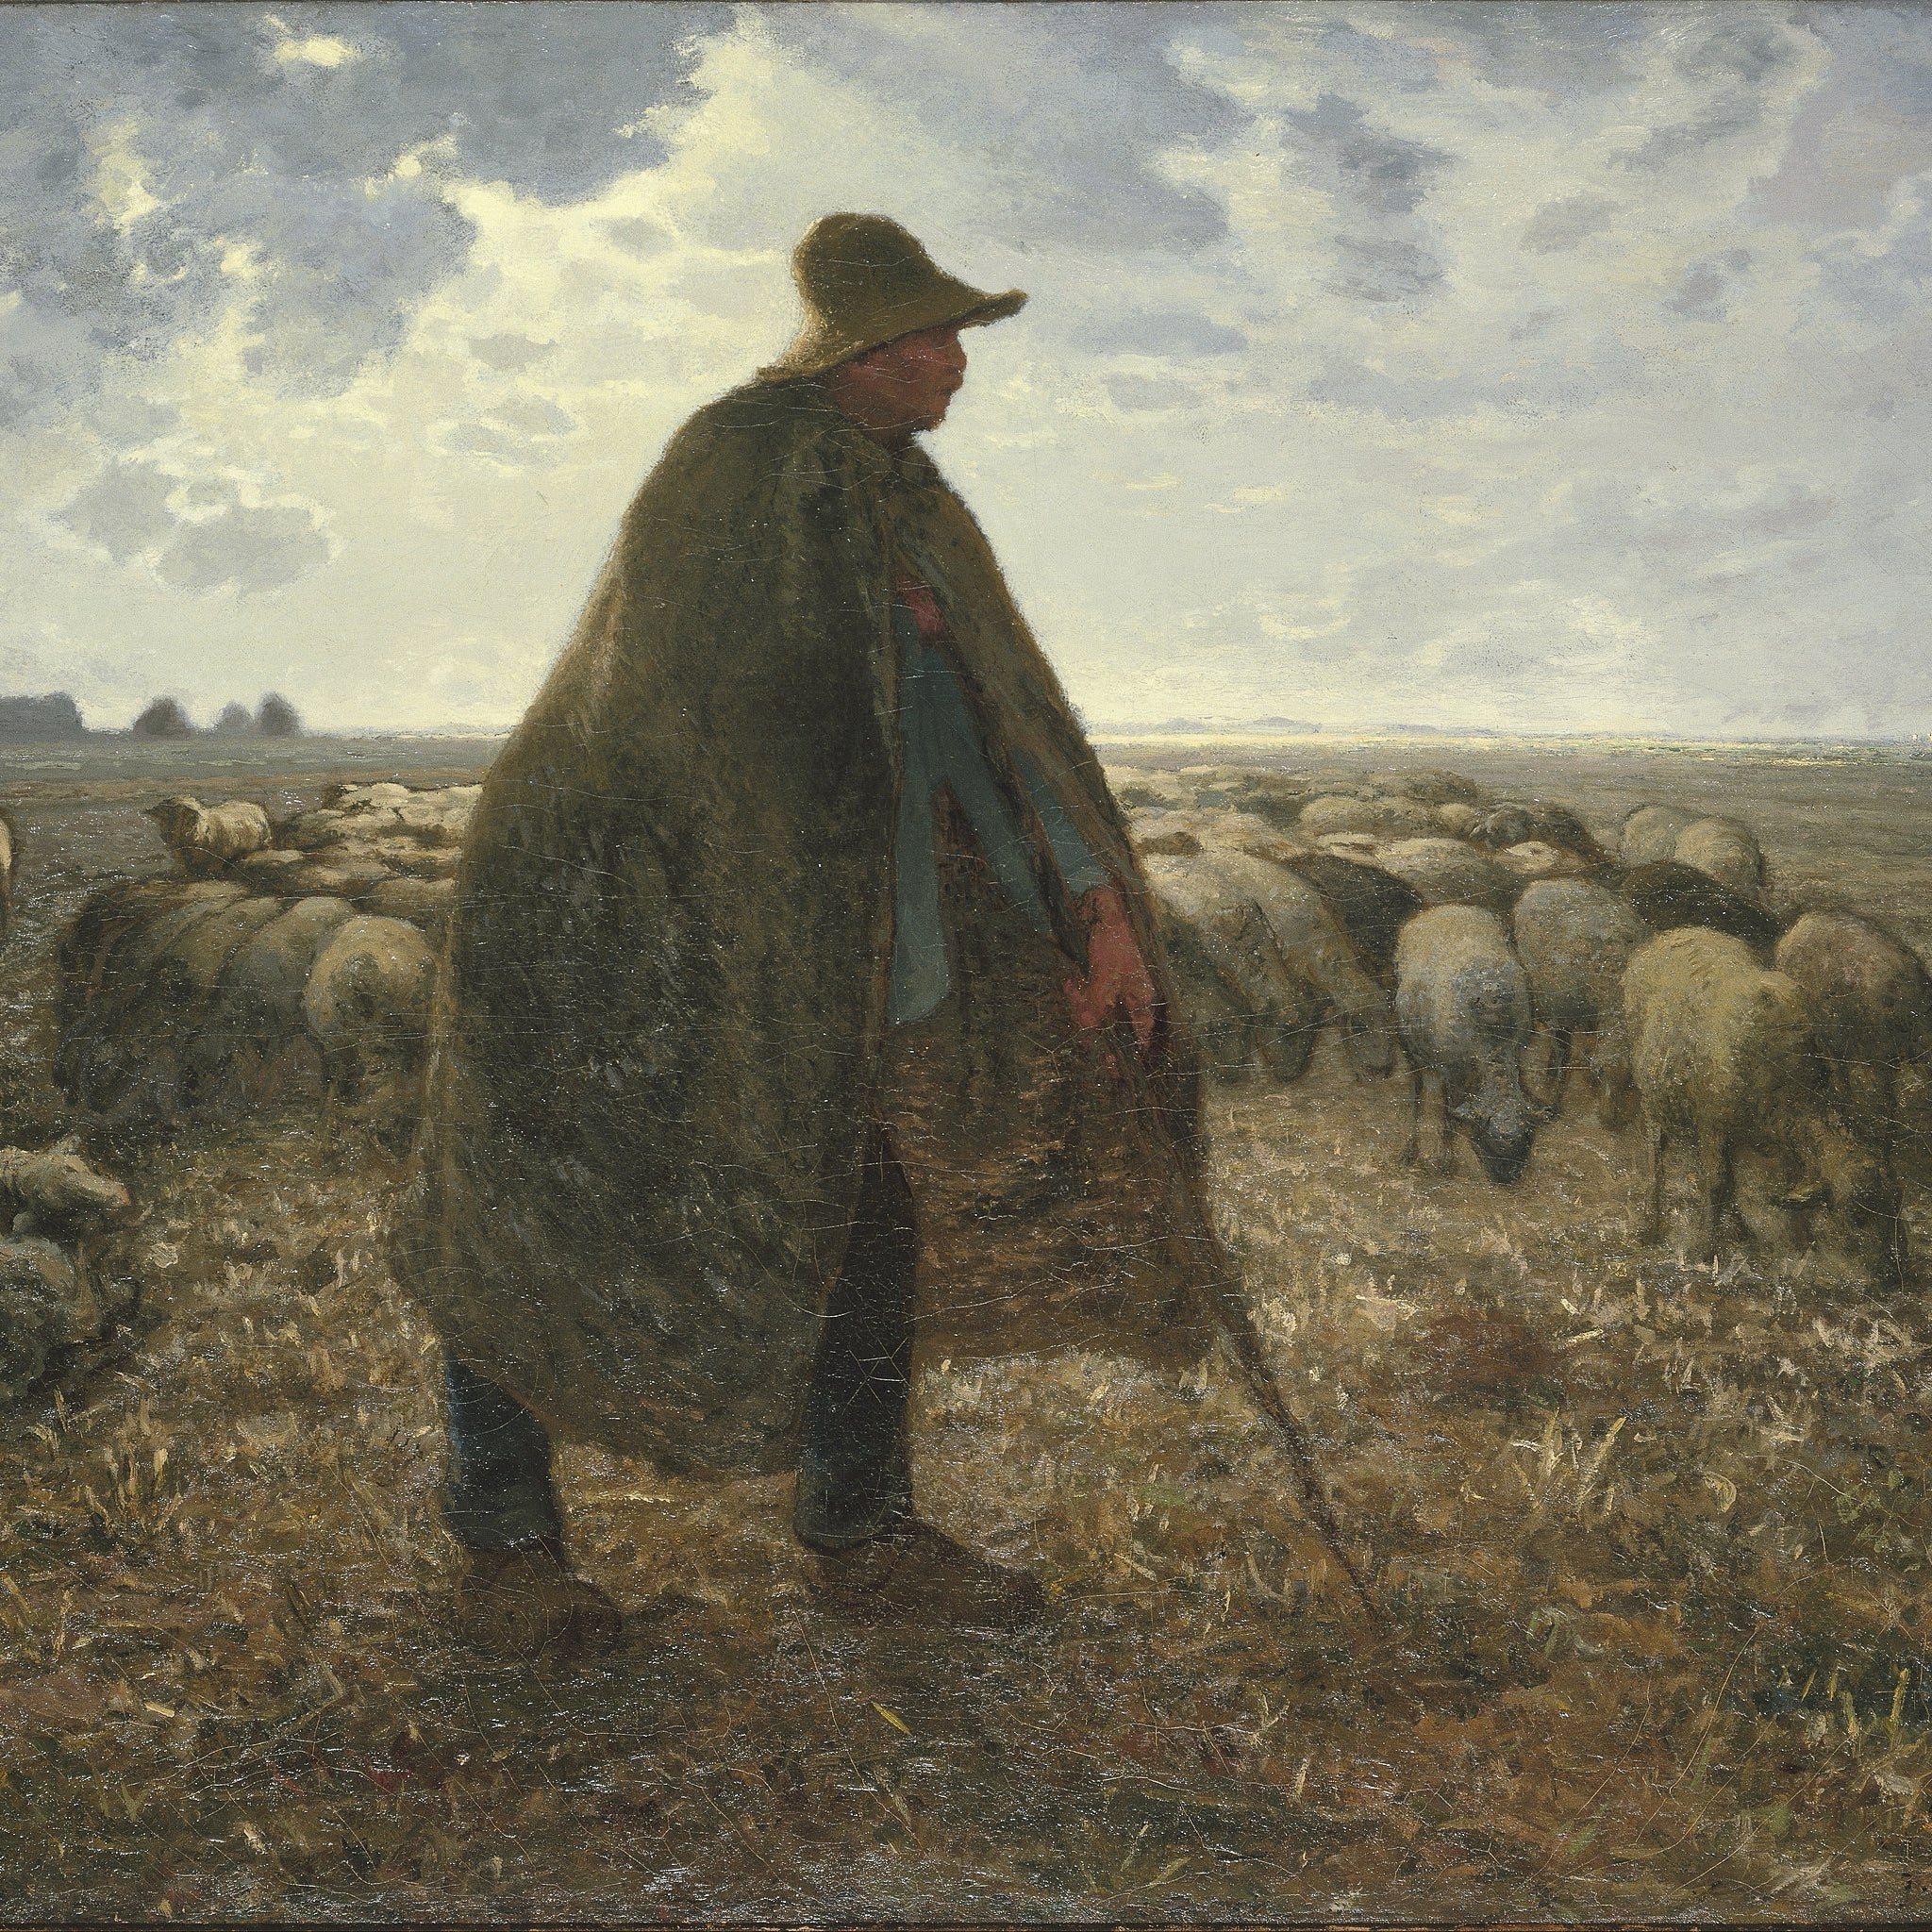 Un berger gardant son troupeau - Jean-François Millet